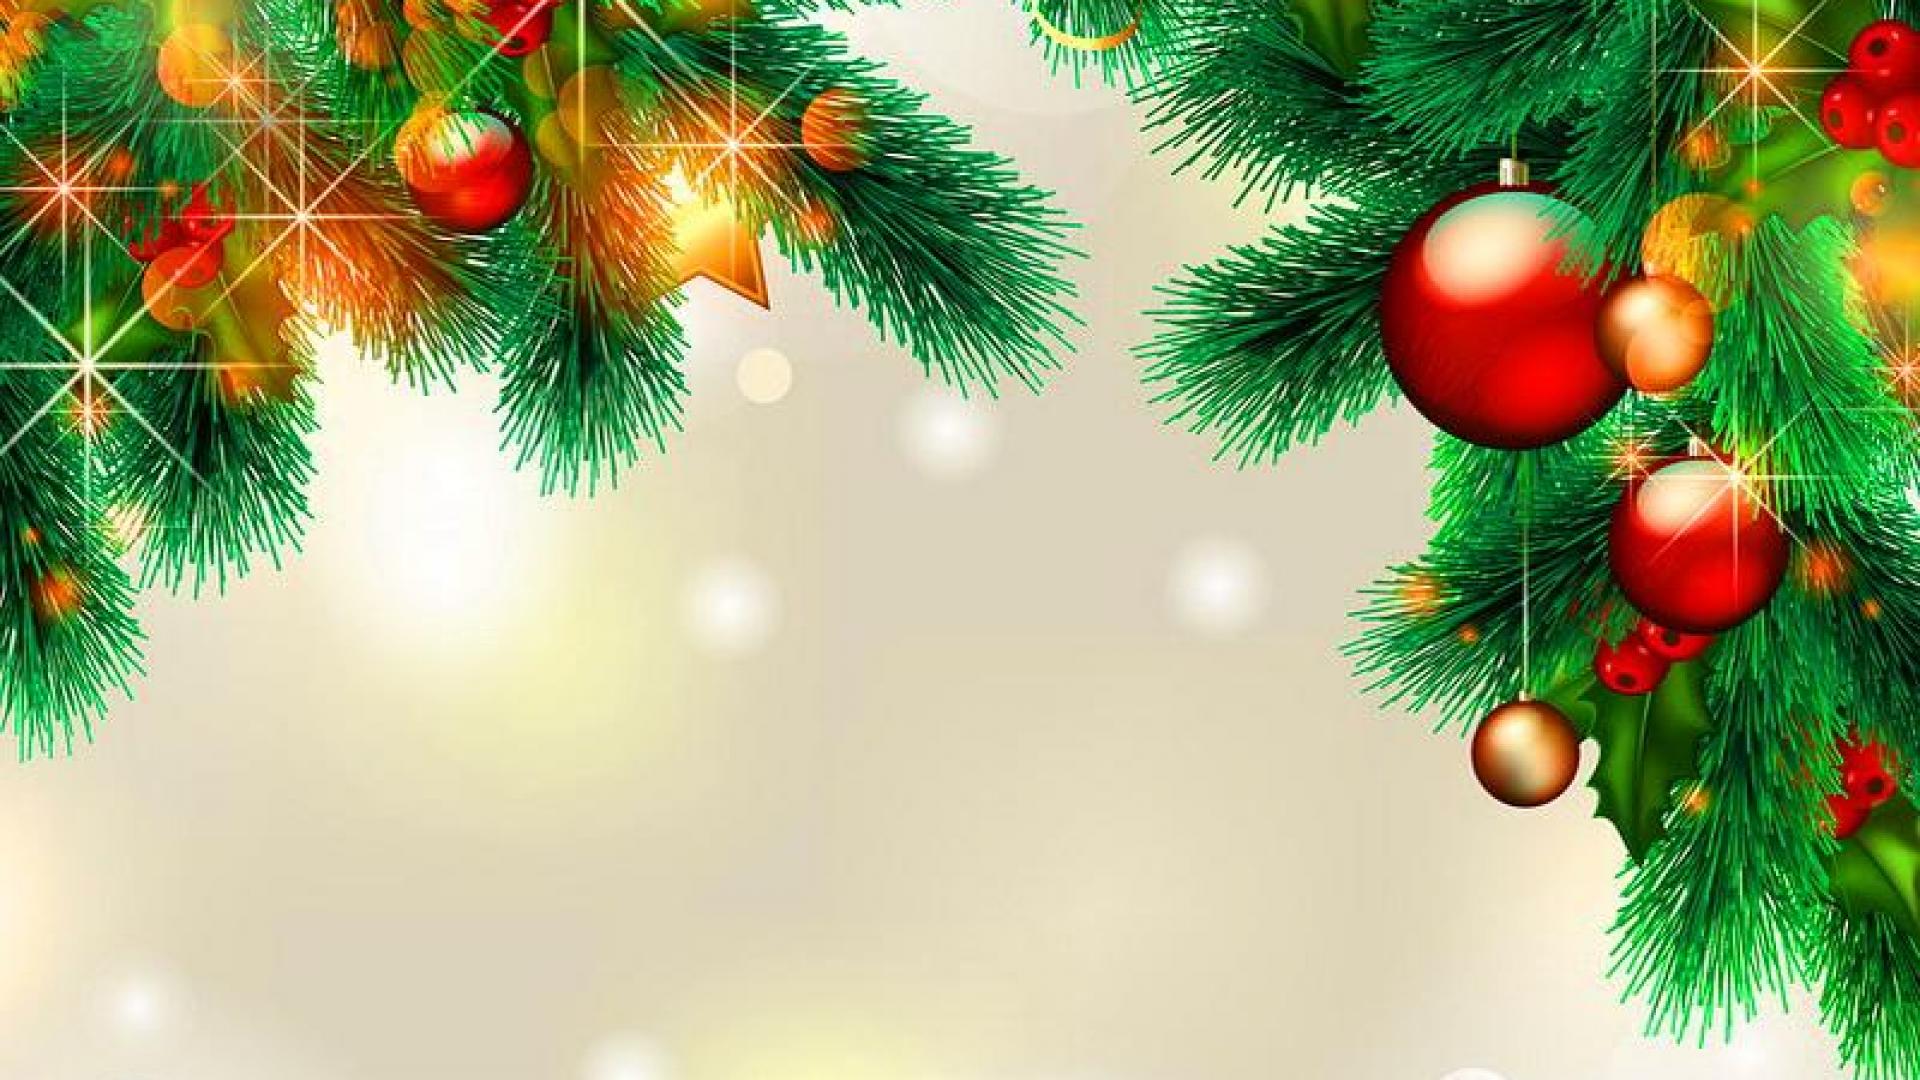 クリスマスの壁紙のhd,クリスマスオーナメント,木,クリスマスツリー,クリスマスの飾り,モミ